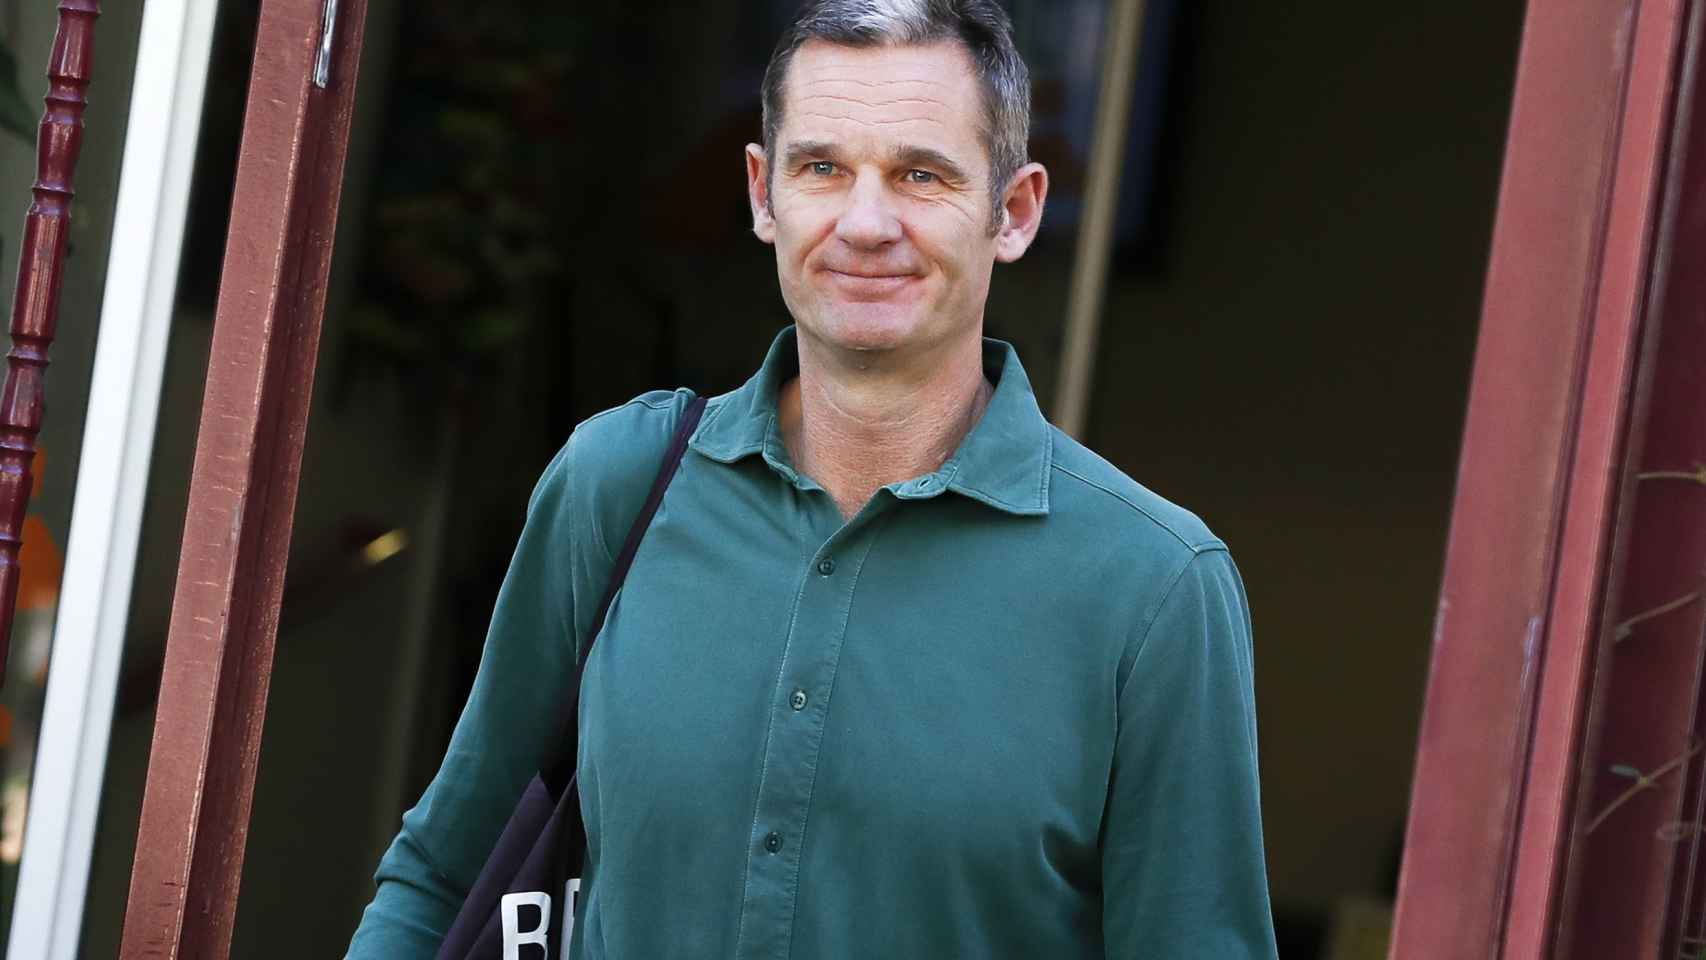 Iñaki Urdangarin ha hecho de la camisa verde su uniforme de trabajo fuera de la cárcel.